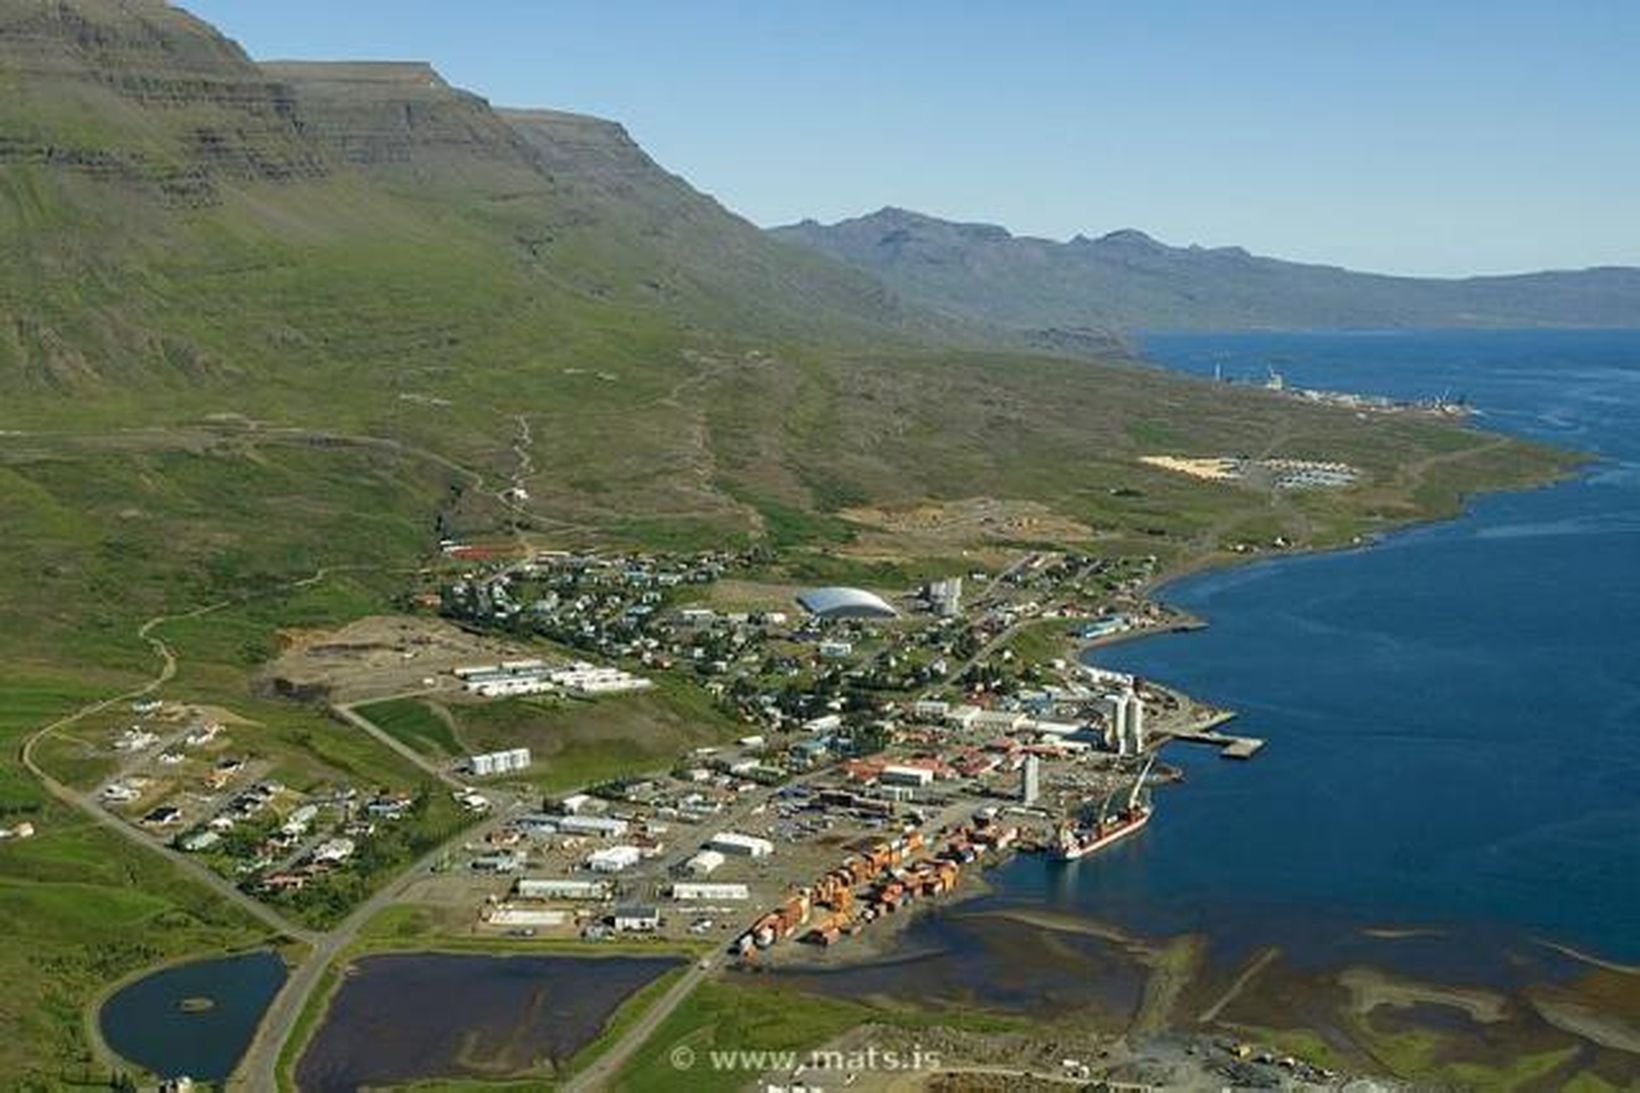 Reyðarfjörður